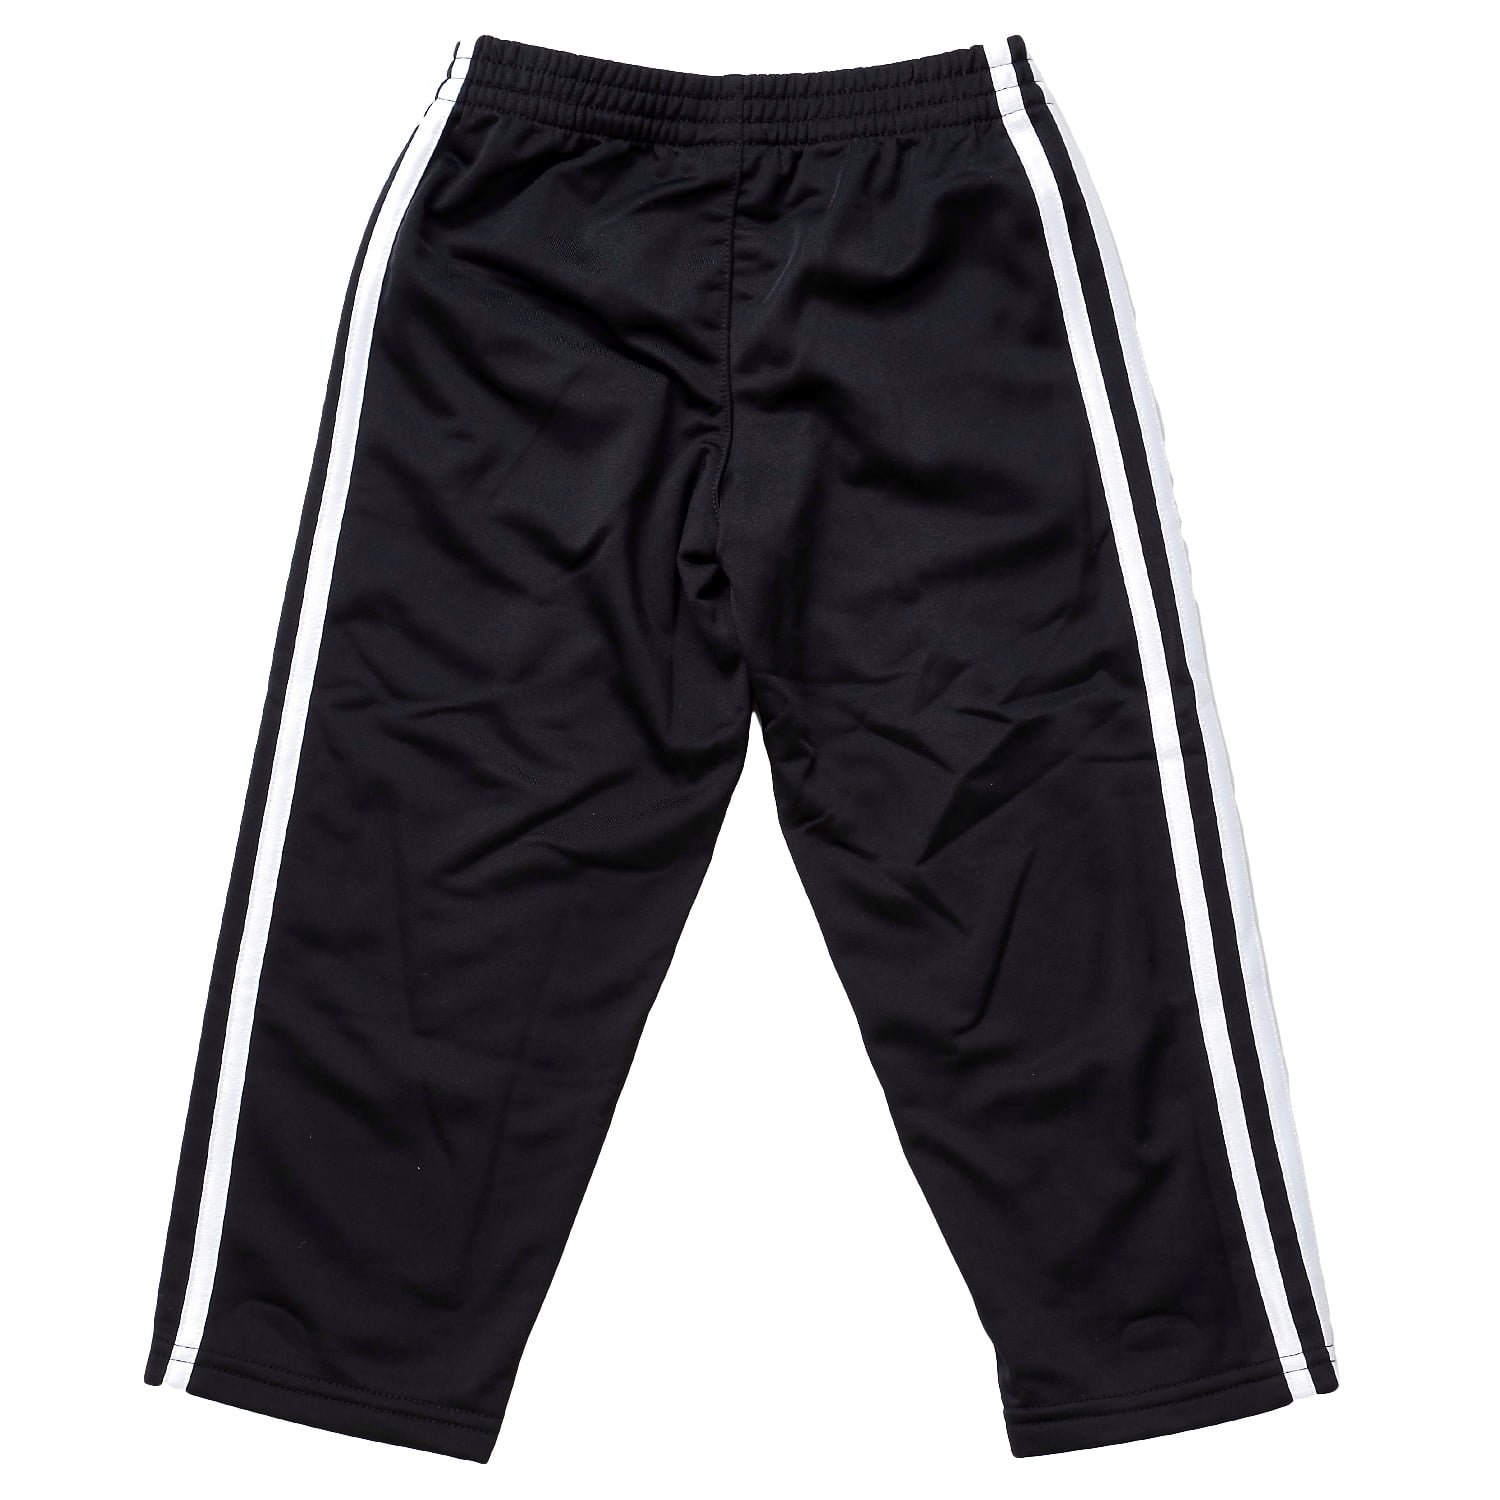 Adidas Tricot Pants - Black Adi - Boys - 5 - Walmart.com